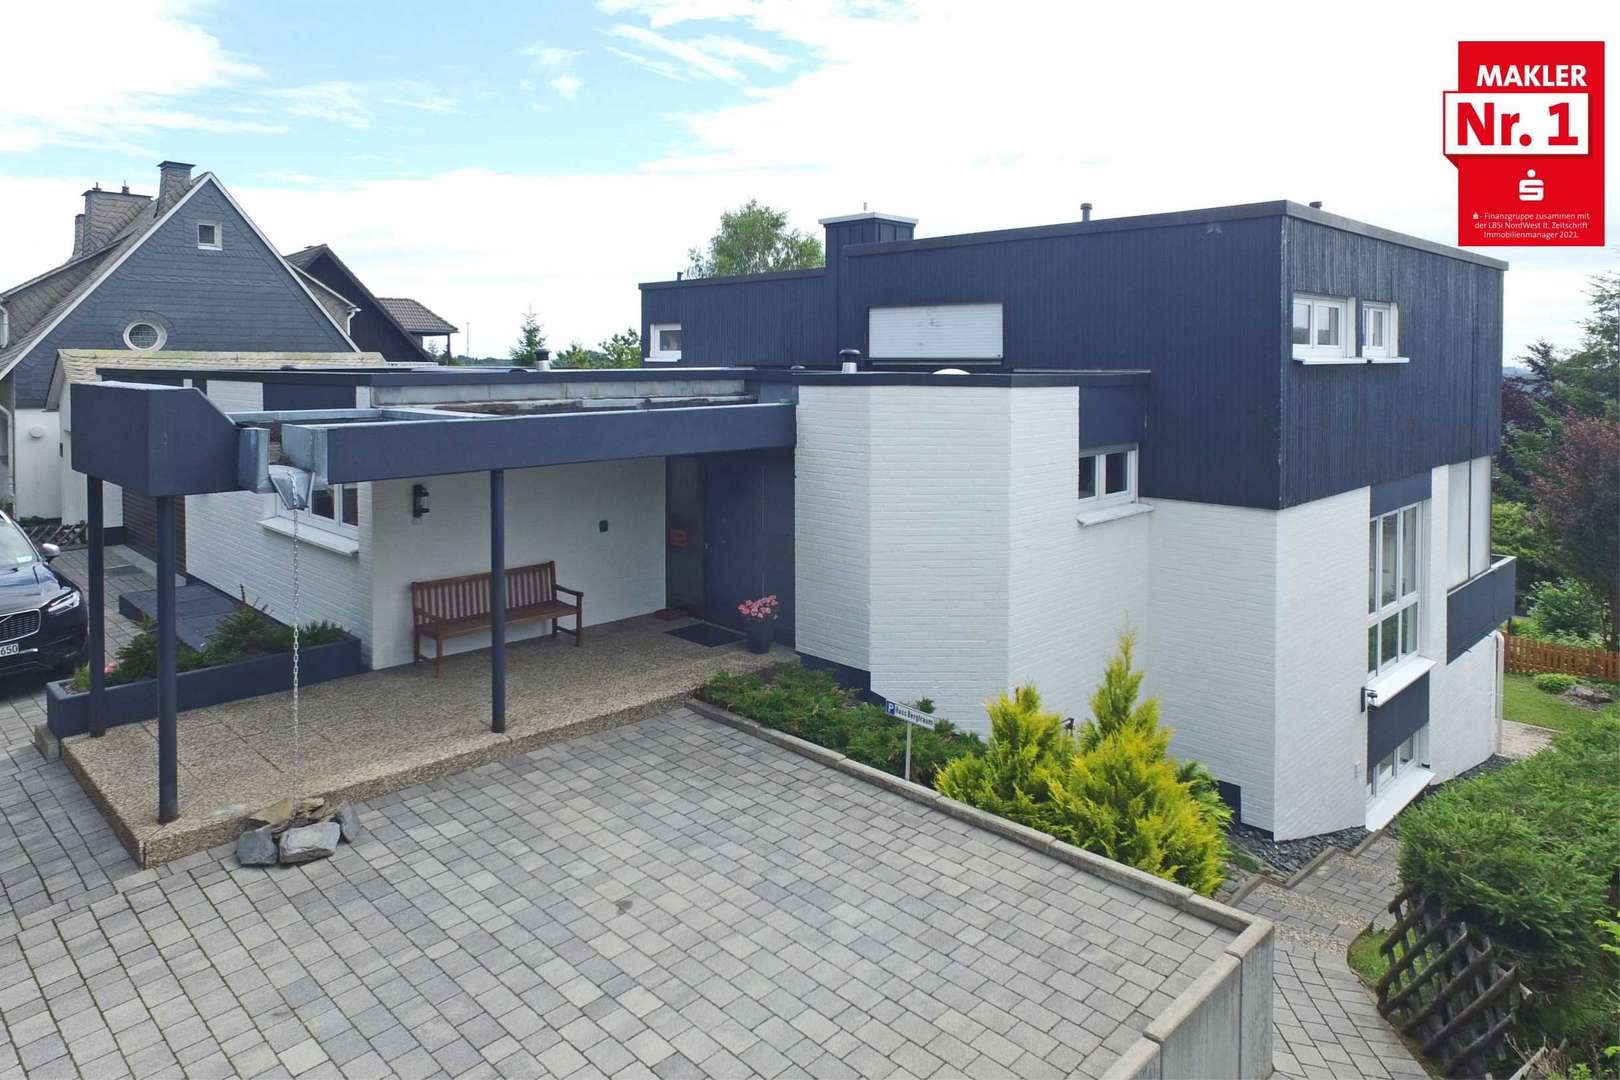 2832072 fio 2 - Einfamilienhaus in 59955 Winterberg mit 339m² günstig kaufen